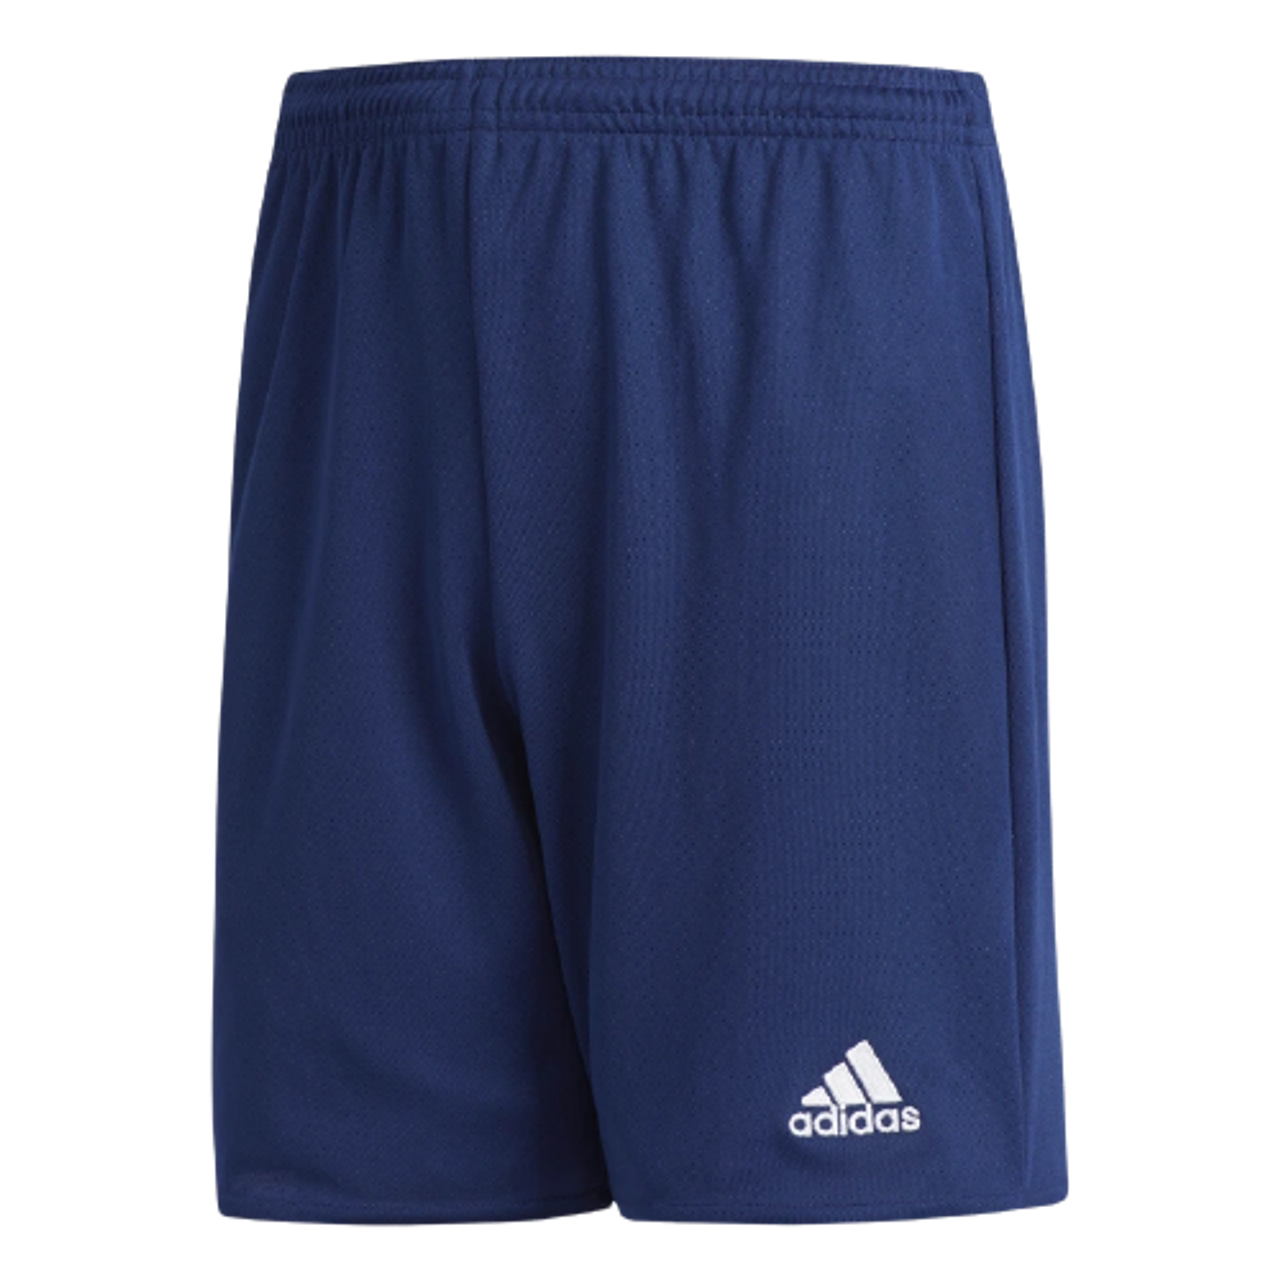 Adidas Parma 16 kids shorts - Navy